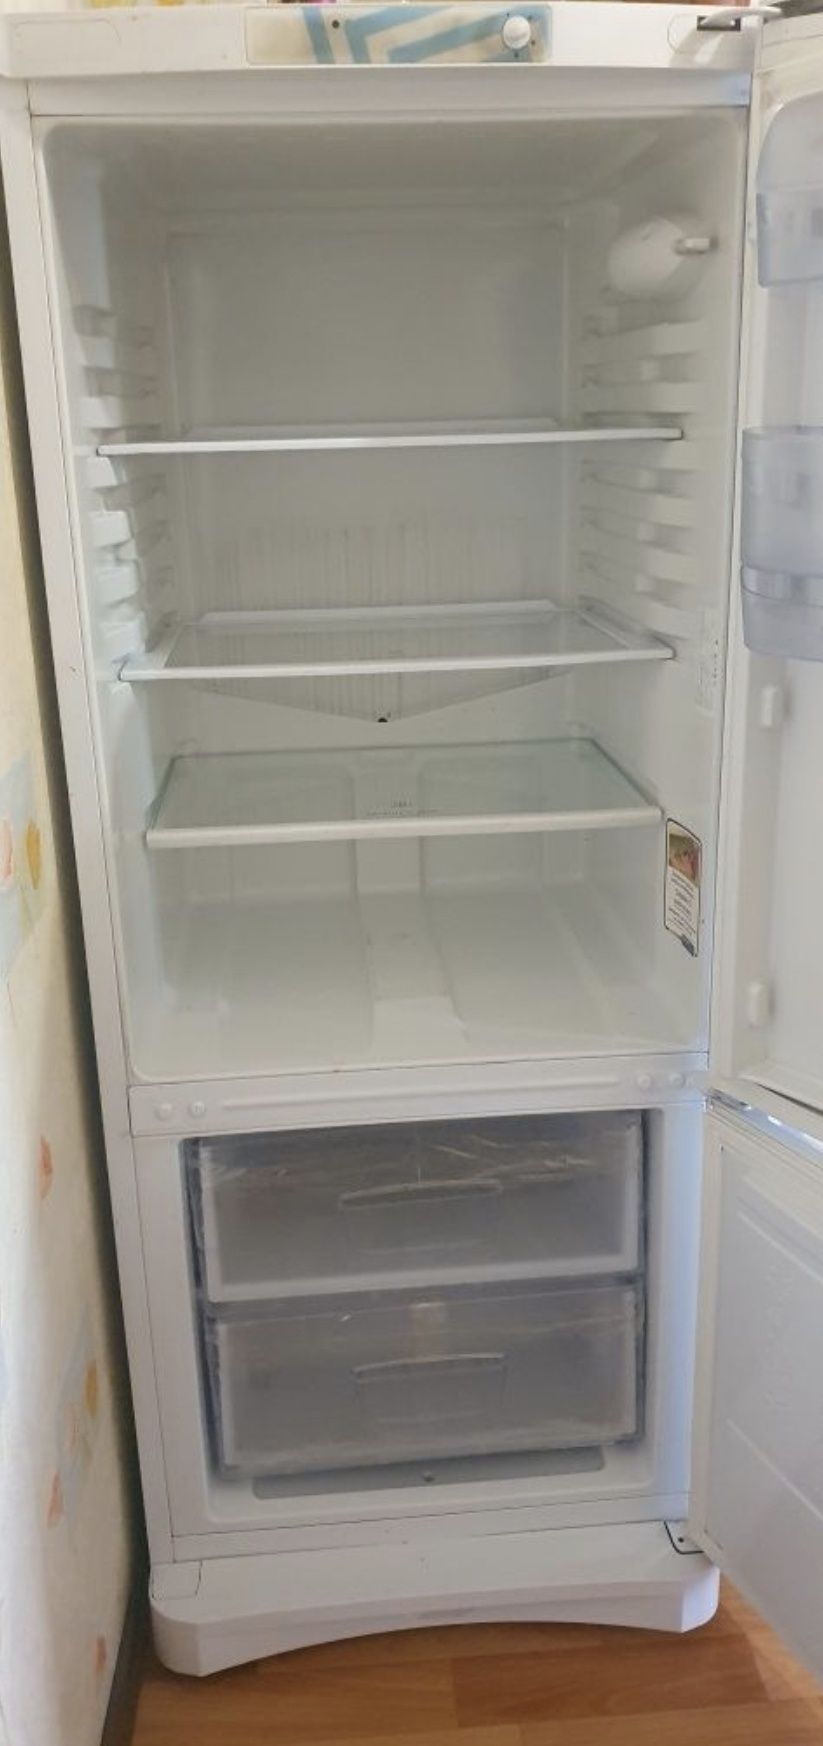 Продам холодильник в рабочем состоянии